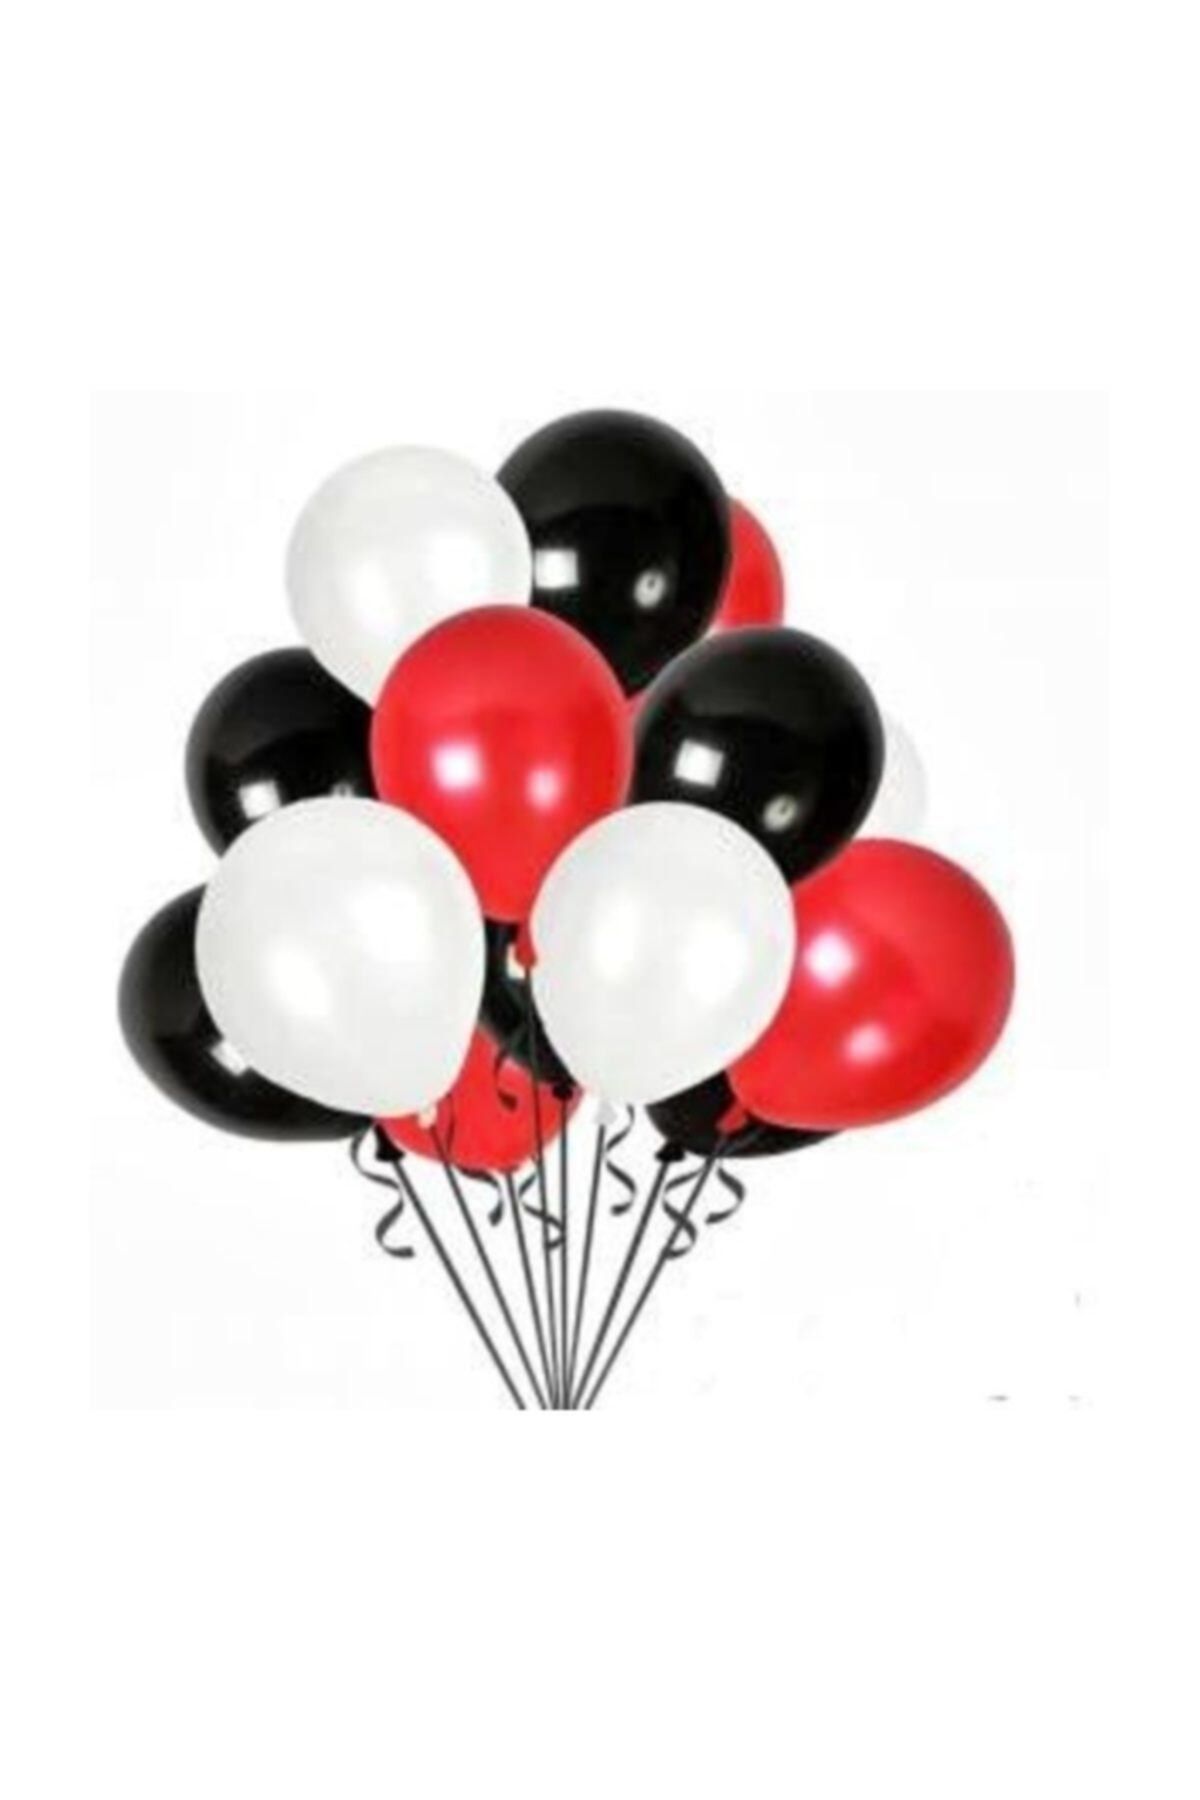 TATLI GÜNLER Partiniseç 30 Adet Metalik Sedefli (beyaz-kırmızı-siyah) Karışık Balon Helyumla Uçan